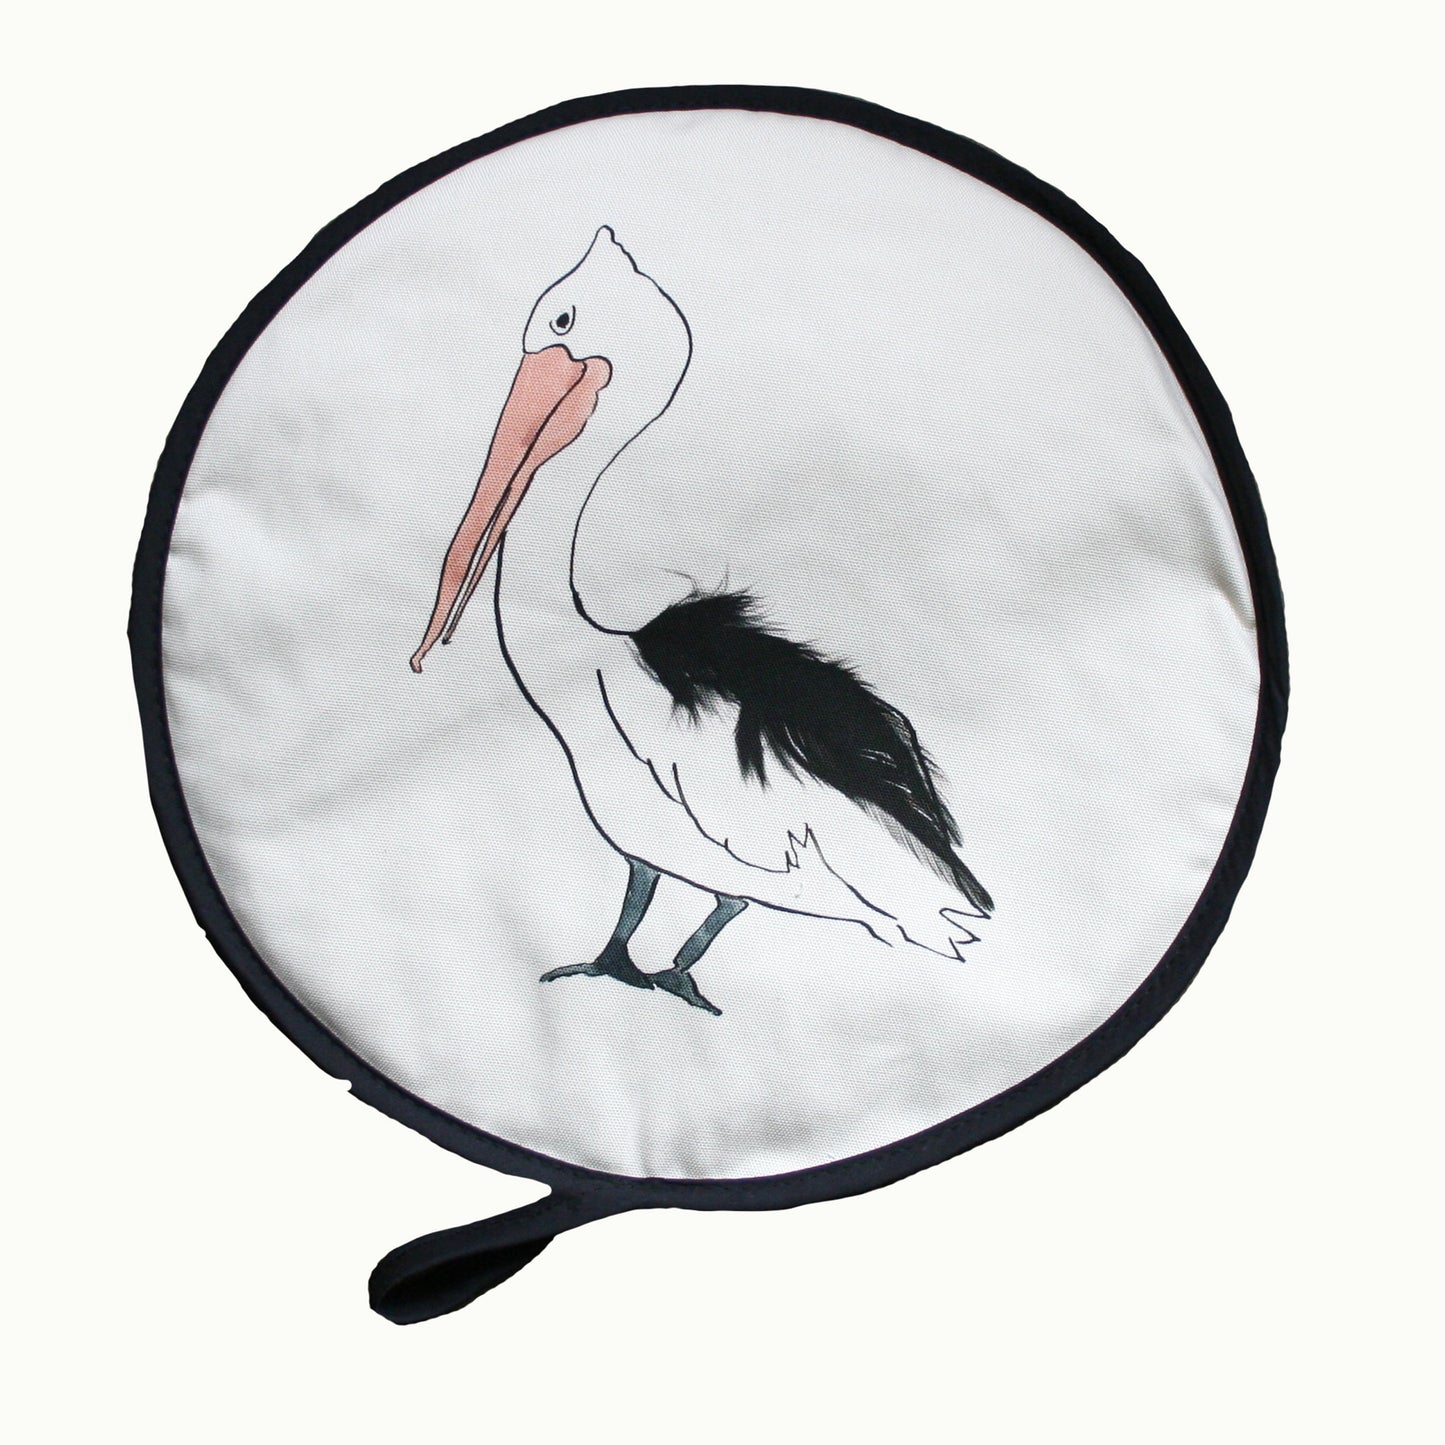 Pelican Aga / Chef circular pads black edging